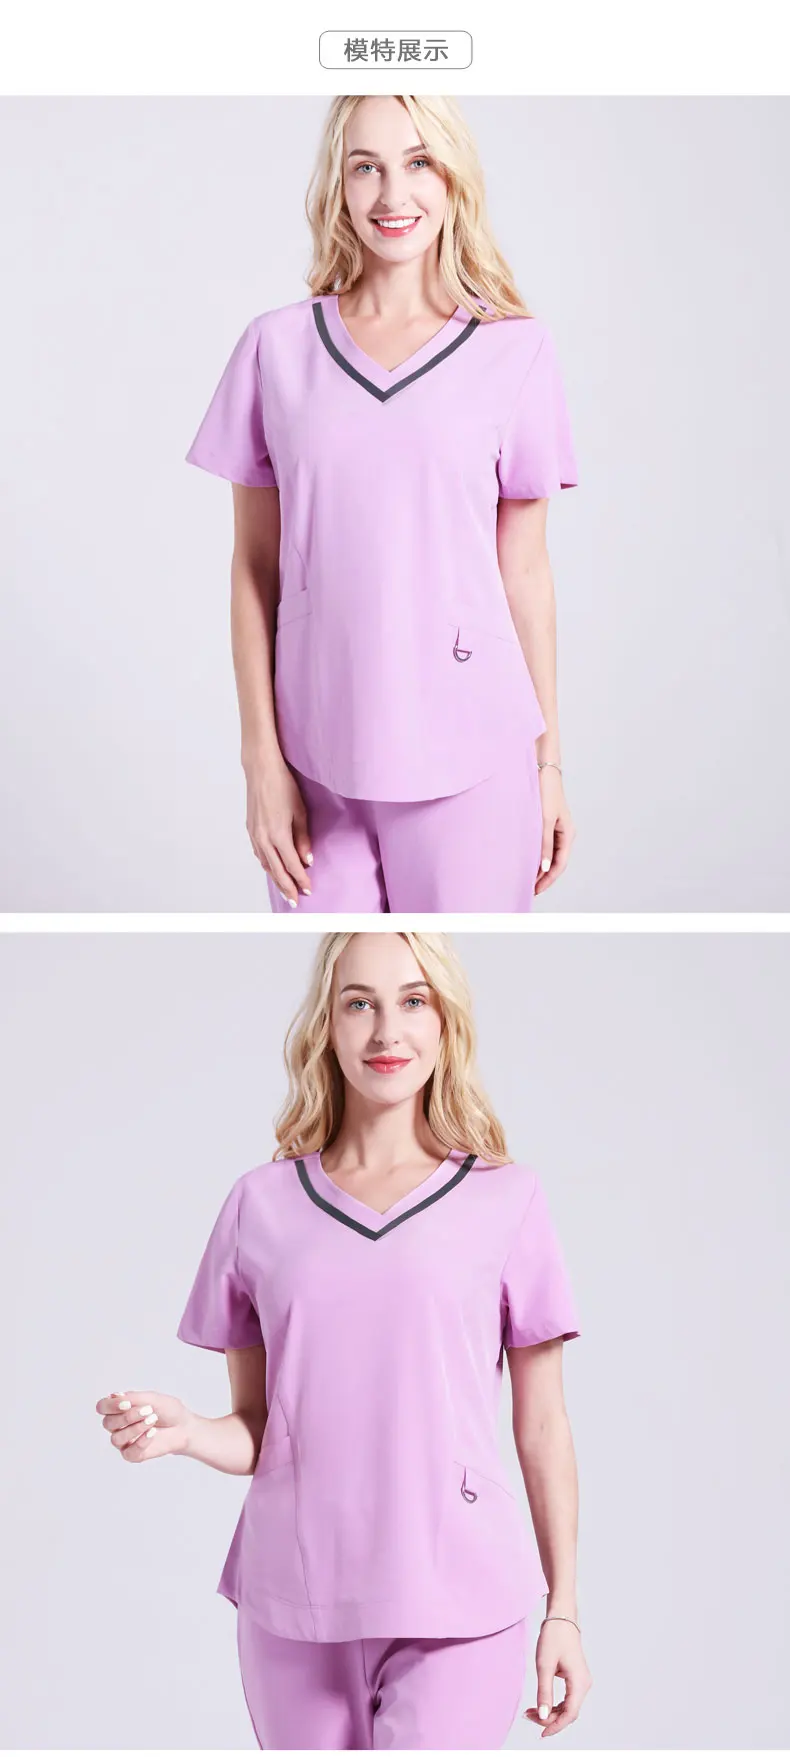 Униформа для салонов красоты удобные медсестра Ручная стирка одежда доктор на duty пластической хирургии медицинская униформа